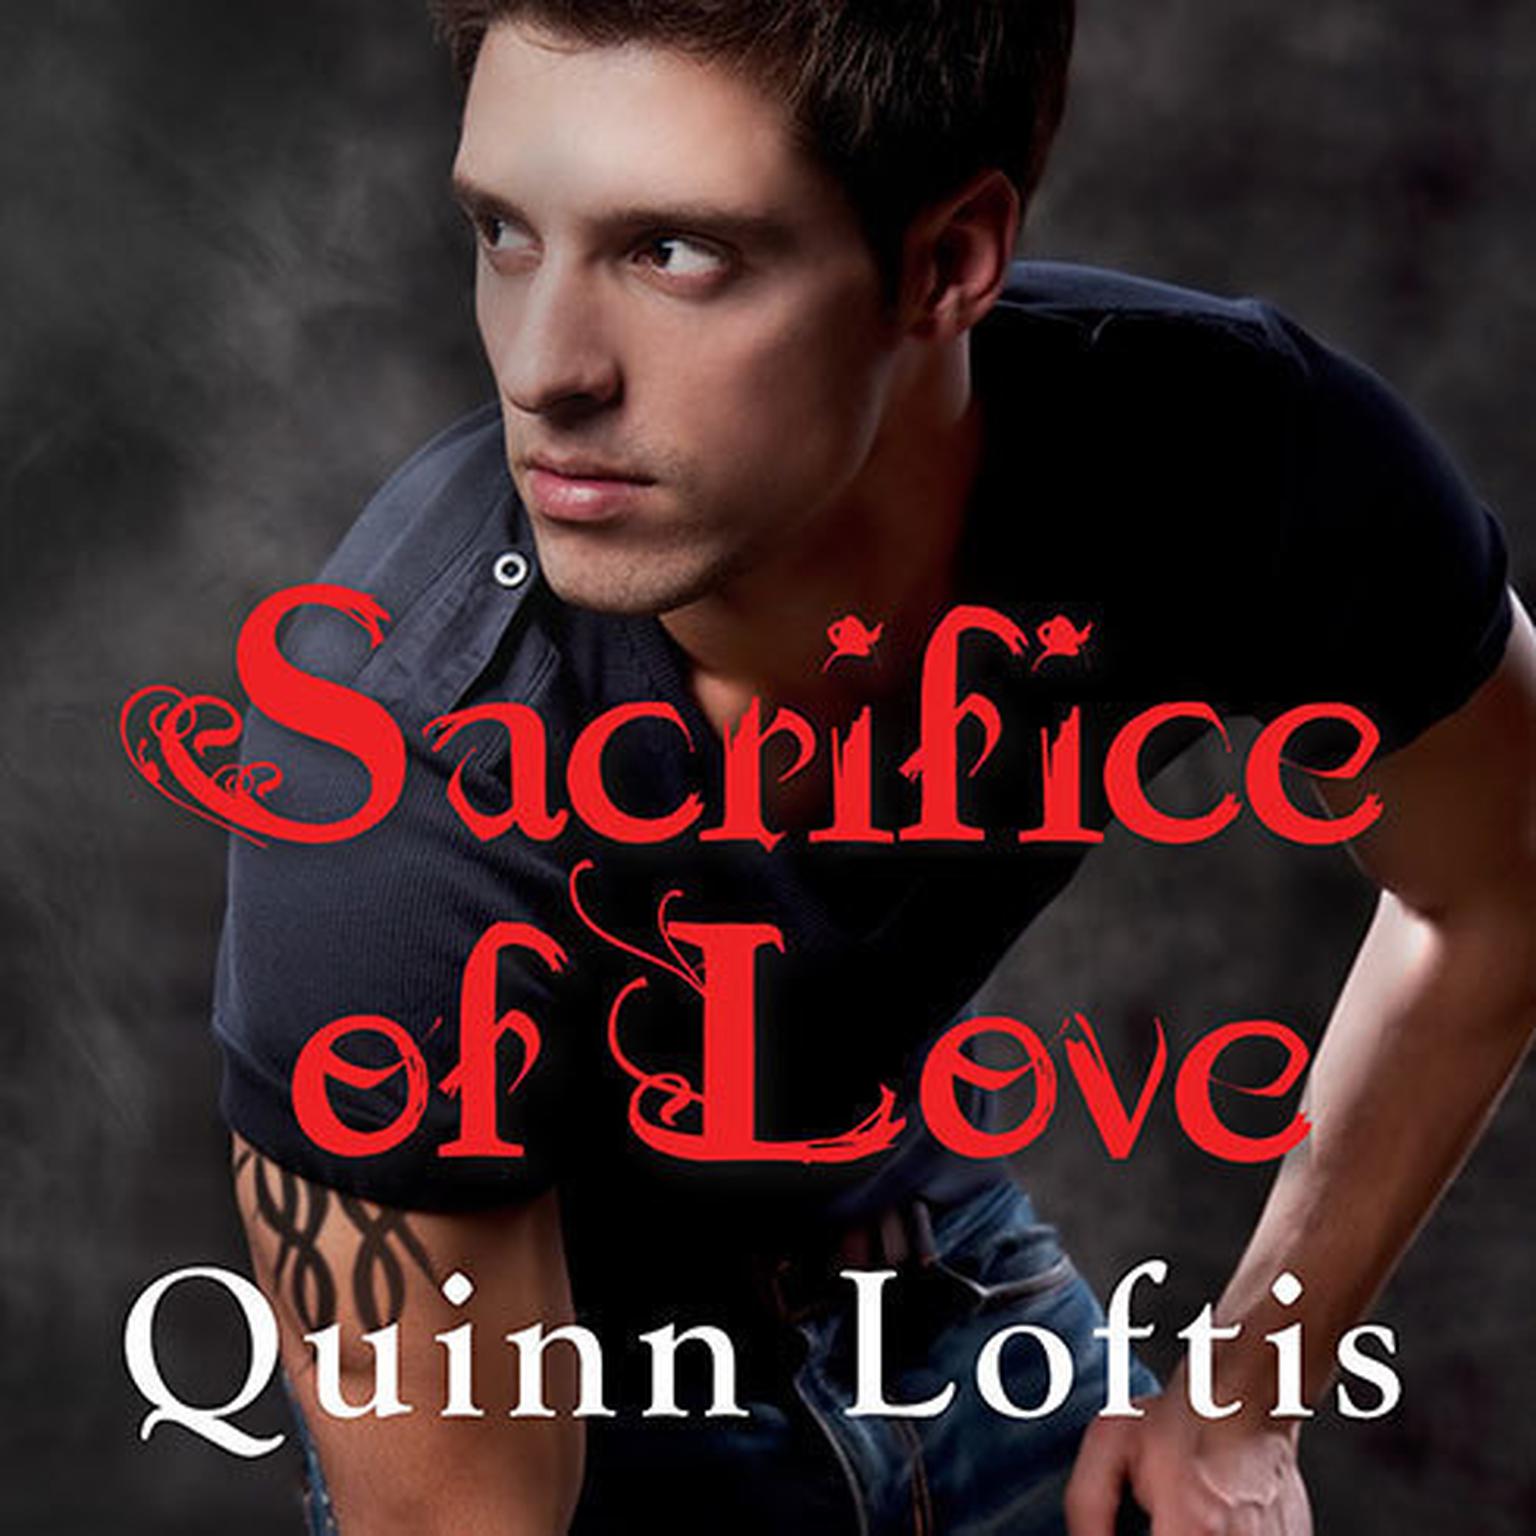 Sacrifice of Love Audiobook, by Quinn Loftis